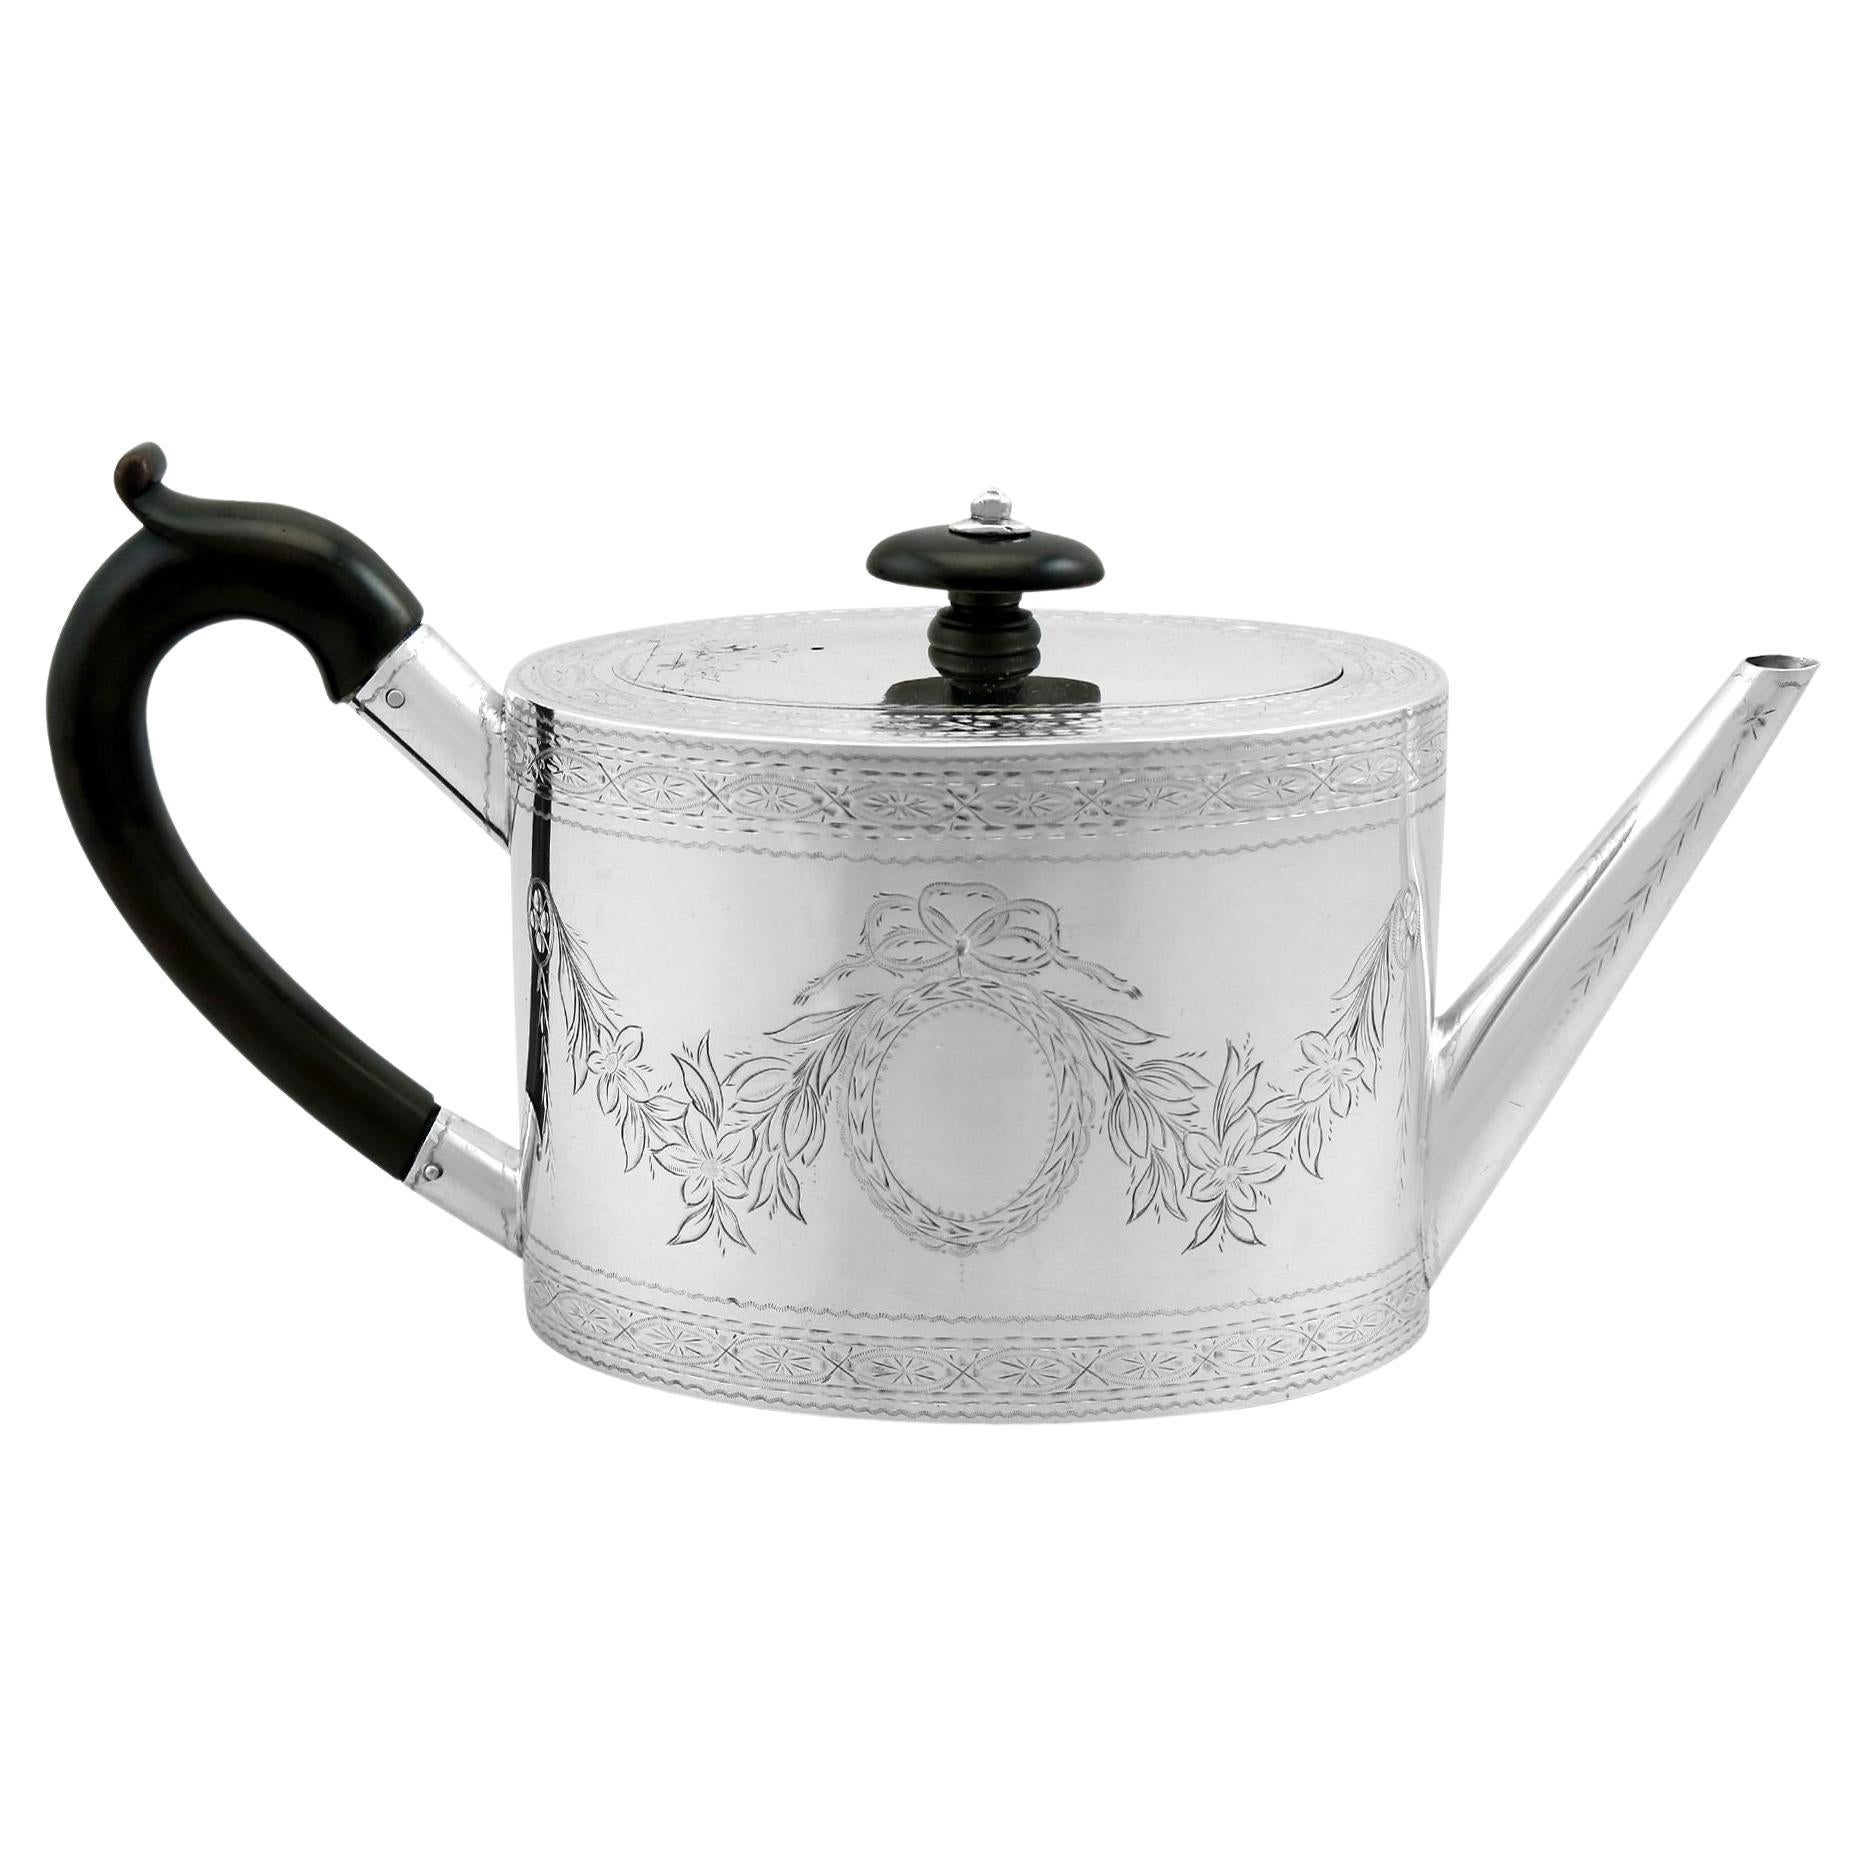 Peter & Ann Bateman Antique Sterling Silver Teapot